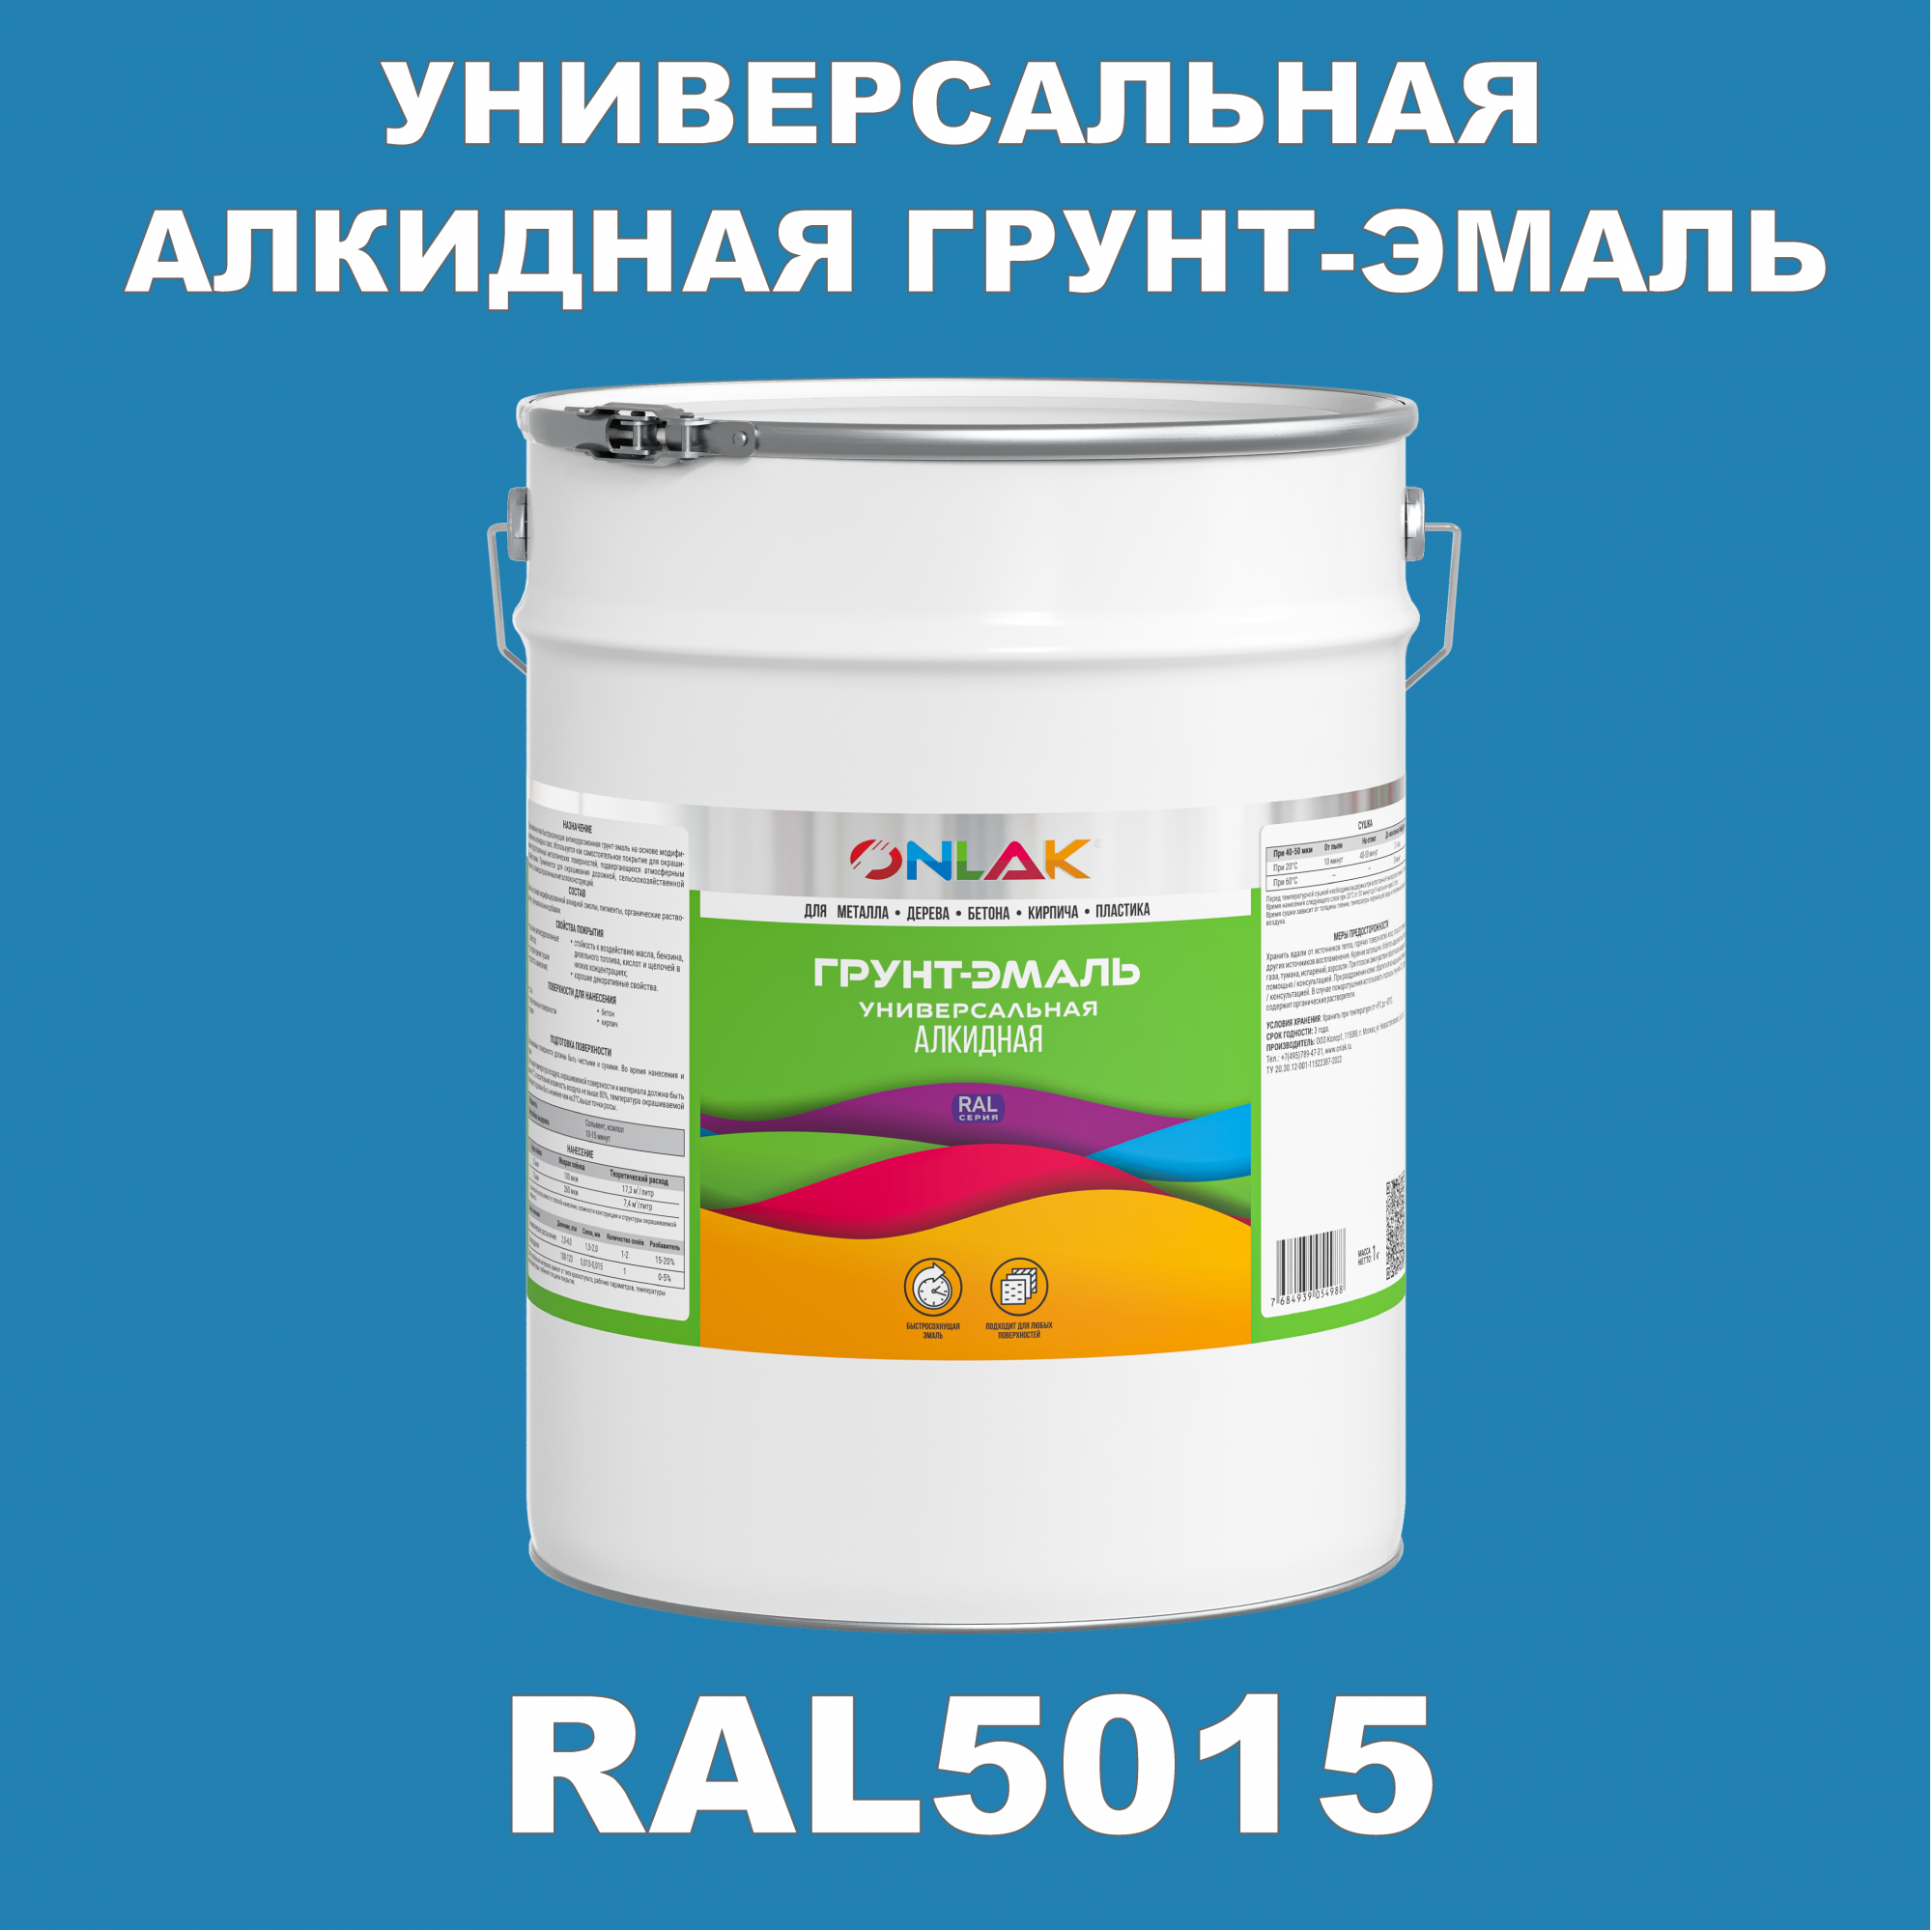 Грунт-эмаль ONLAK 1К RAL5015 антикоррозионная алкидная по металлу по ржавчине 20 кг грунт эмаль yollo по ржавчине алкидная синяя 0 9 кг